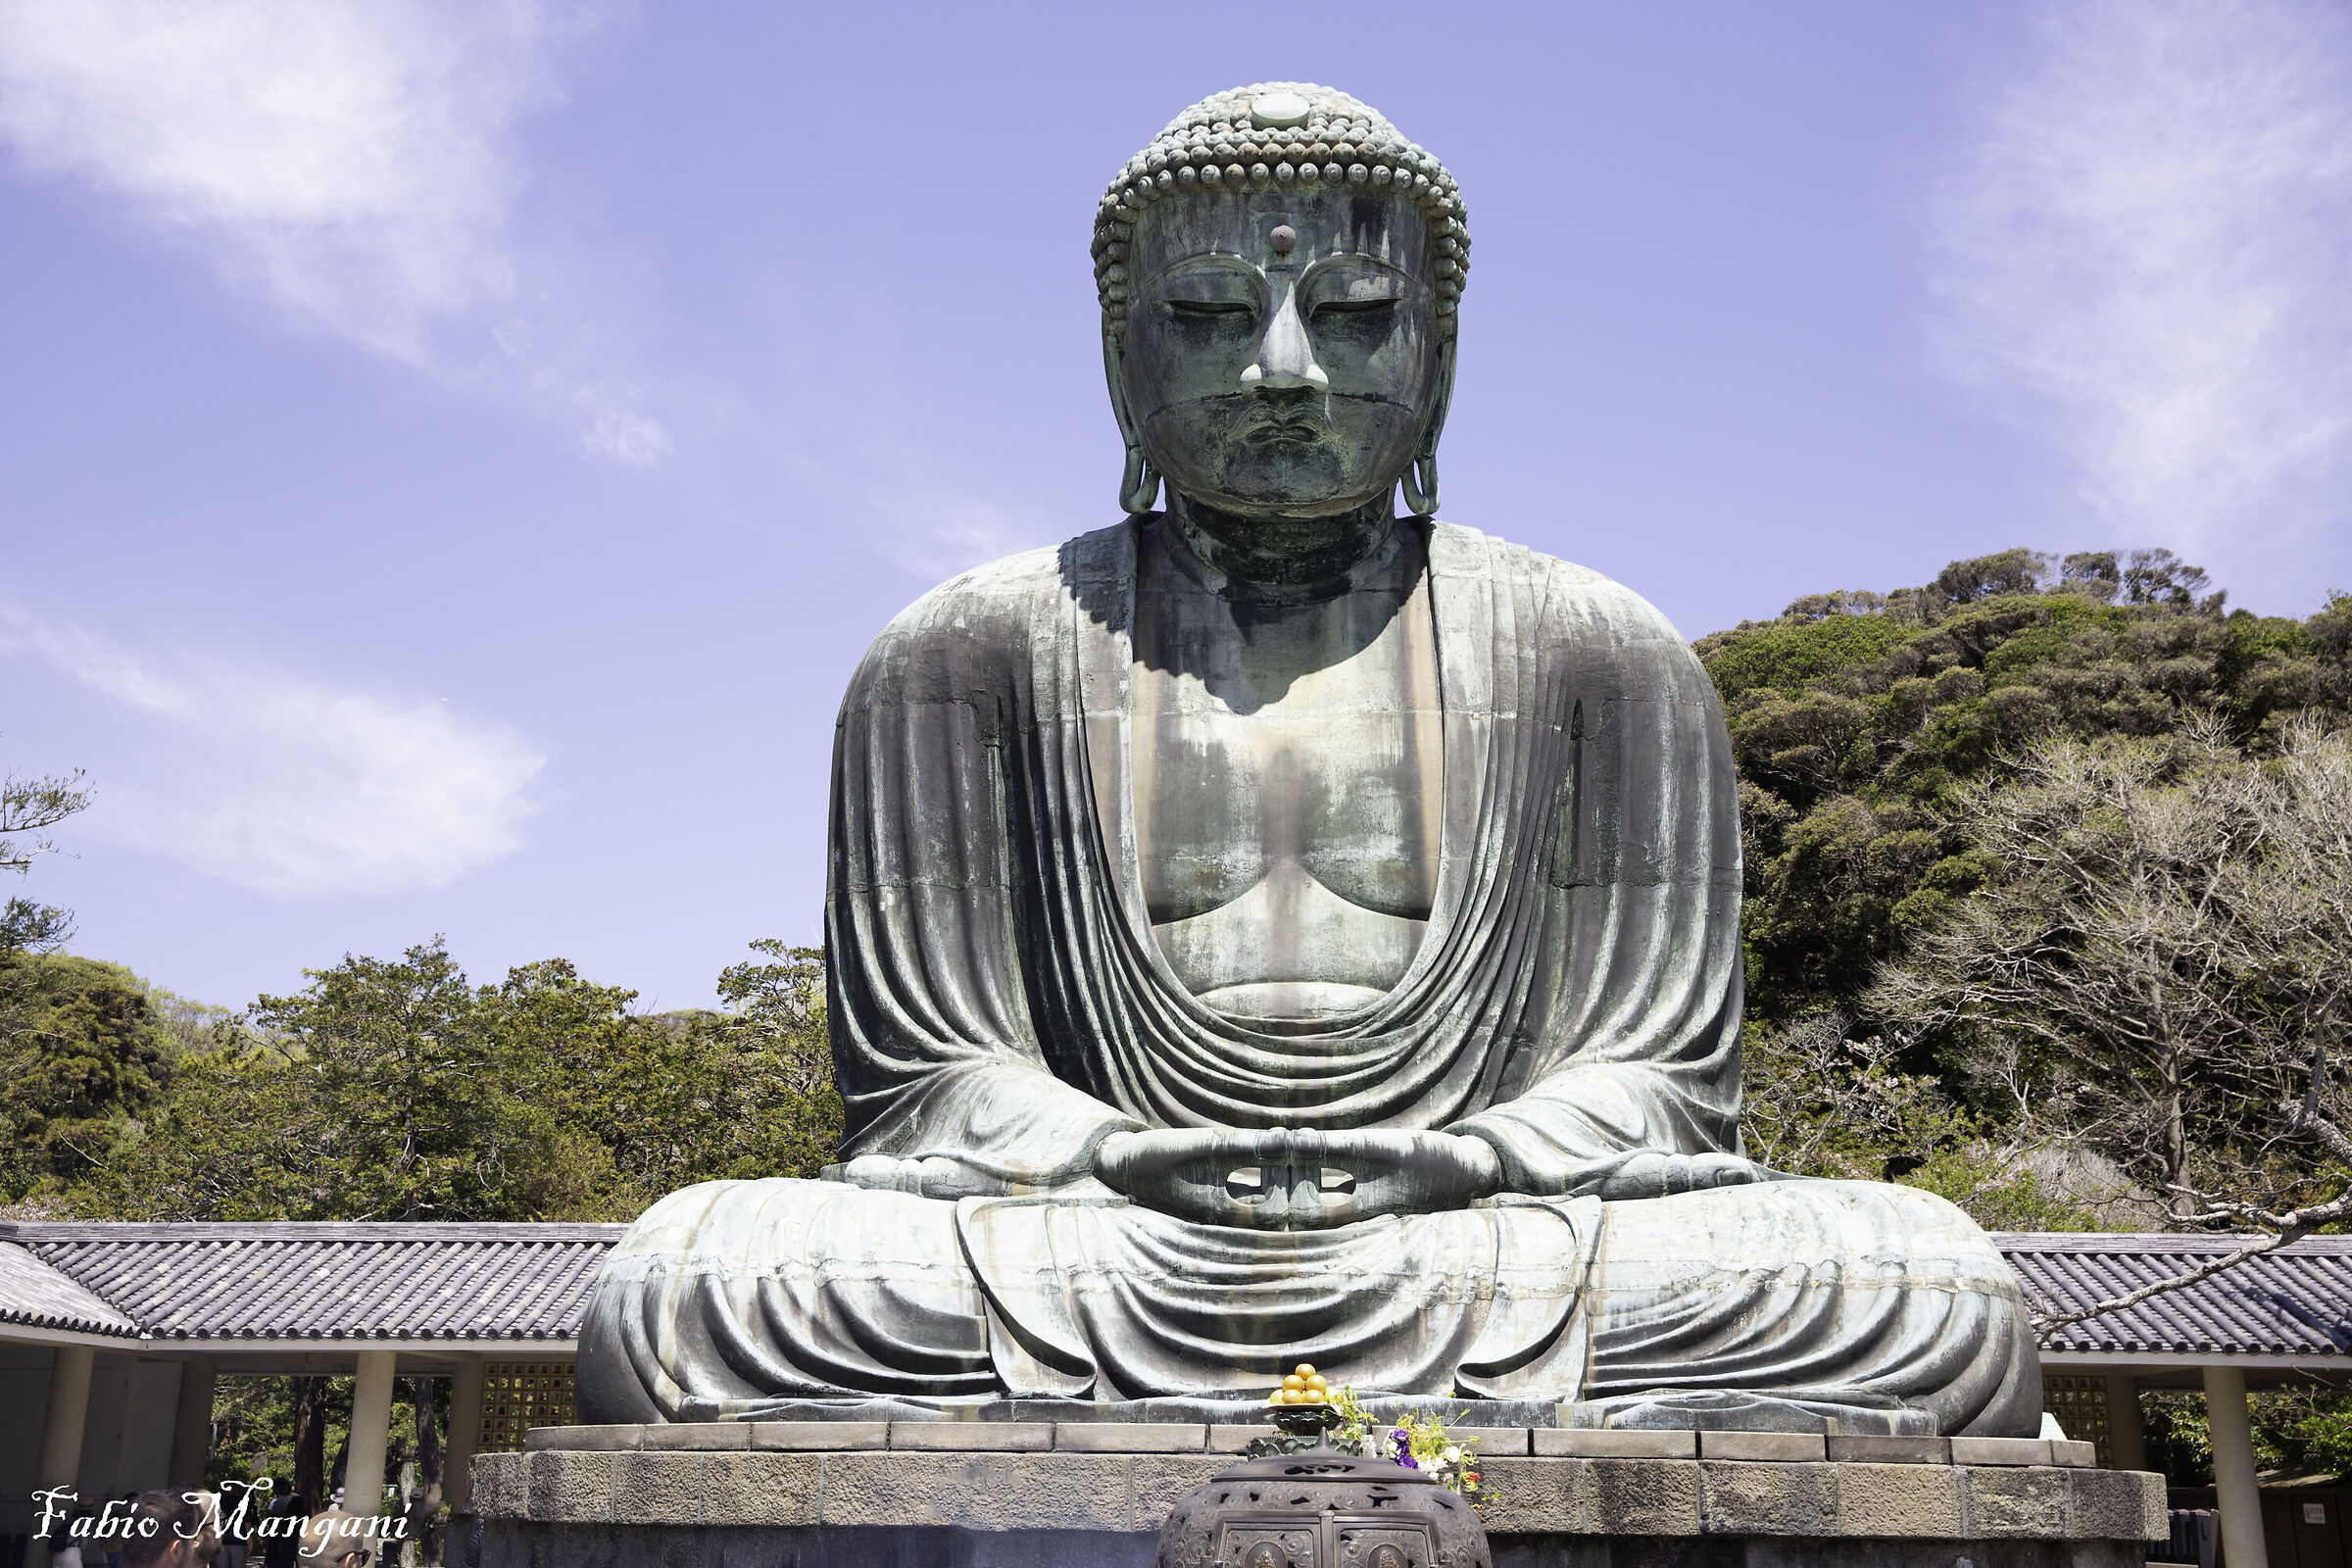 The Great Buddha of Kamakura...